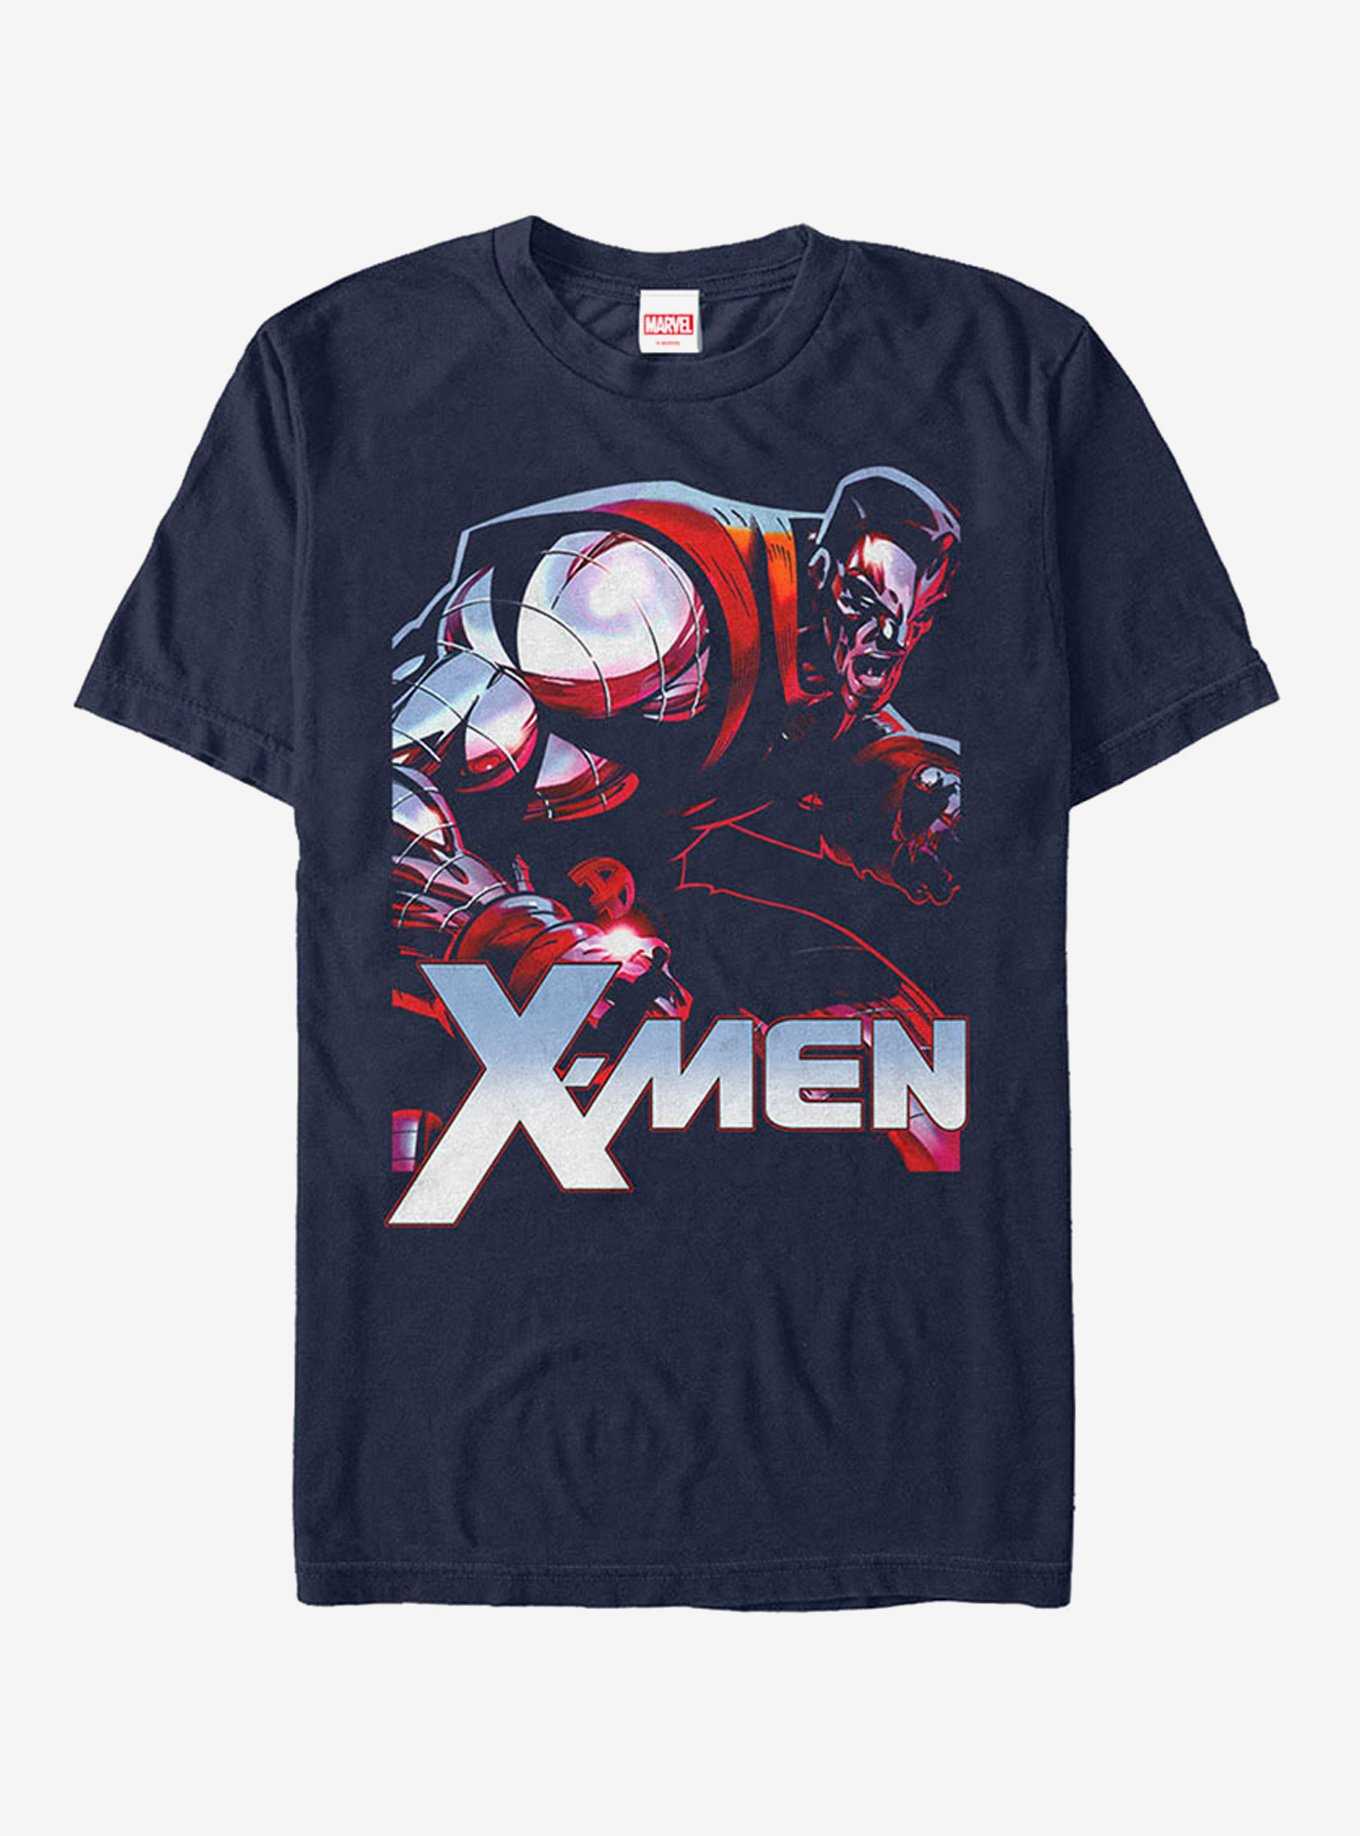 Marvel X-Men Colossus T-Shirt, , hi-res